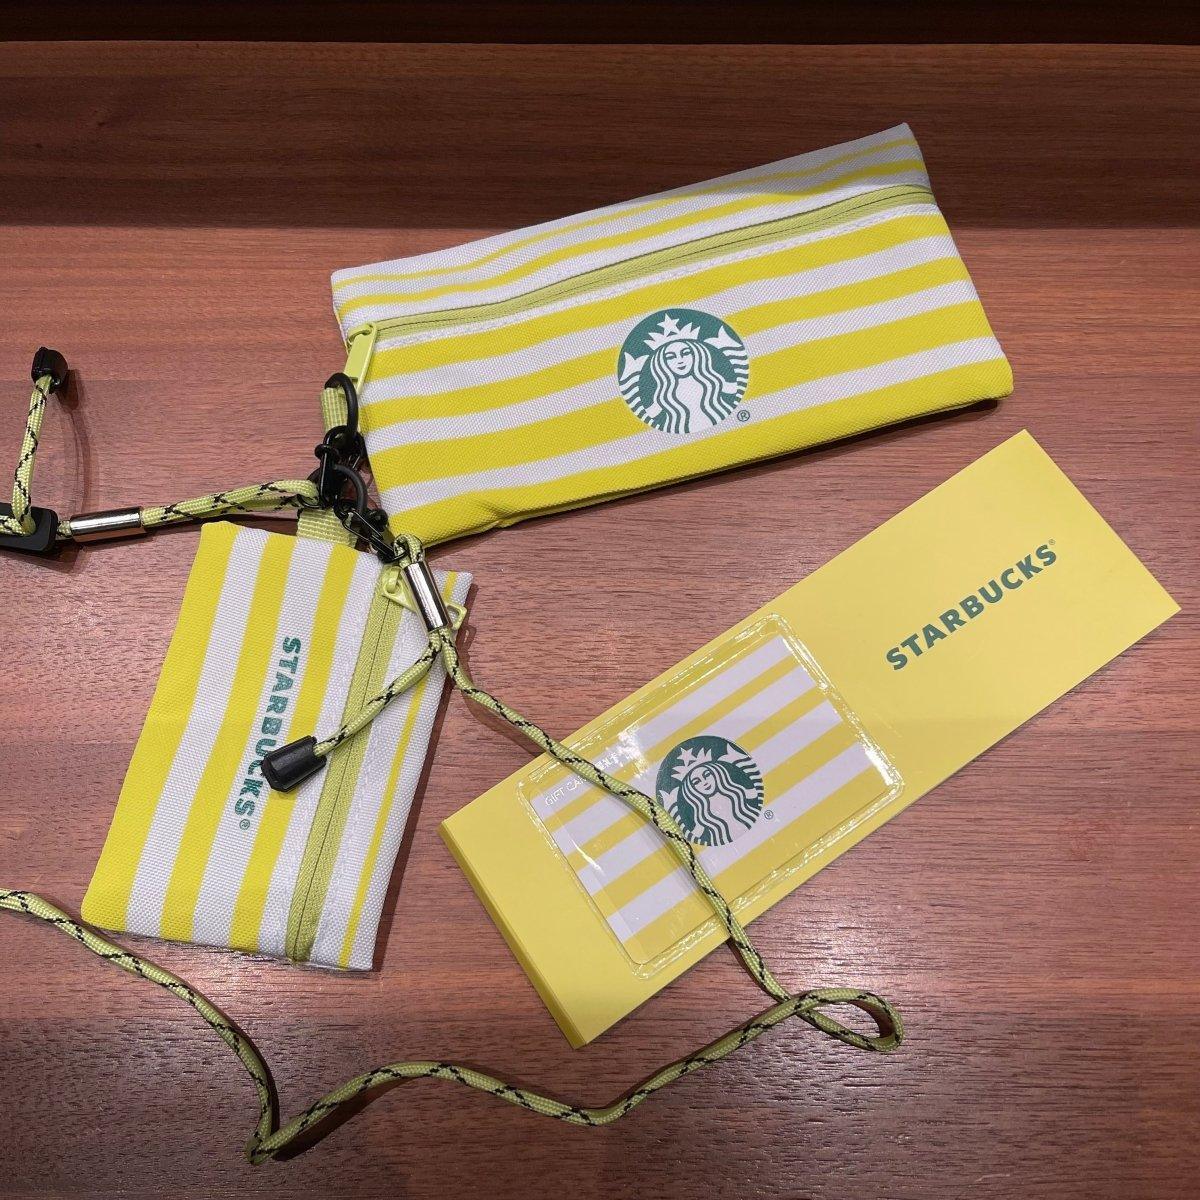 Summer Star Life Member Gift Package with Lanyard - Ann Ann Starbucks